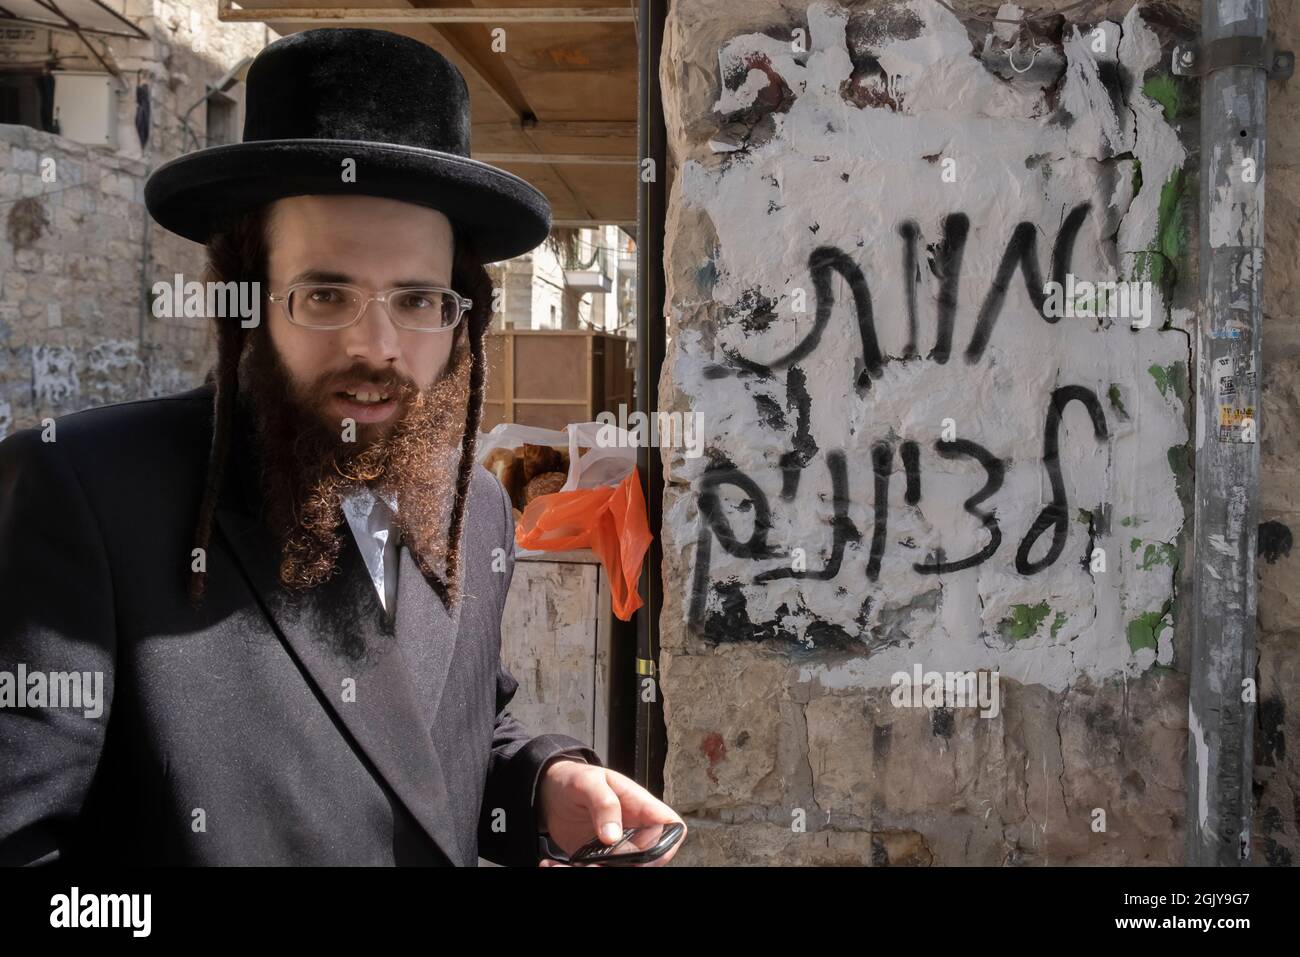 Un ebreo ortodosso cammina accanto a un muro con graffiti contro l'odio sionista spruzzati da ebrei estremisti antisionisti Haredi che recita 'morte ai sionisti' nel quartiere di Mea Shearim, un'enclave ultra-ortodossa a Gerusalemme Ovest Israele Foto Stock